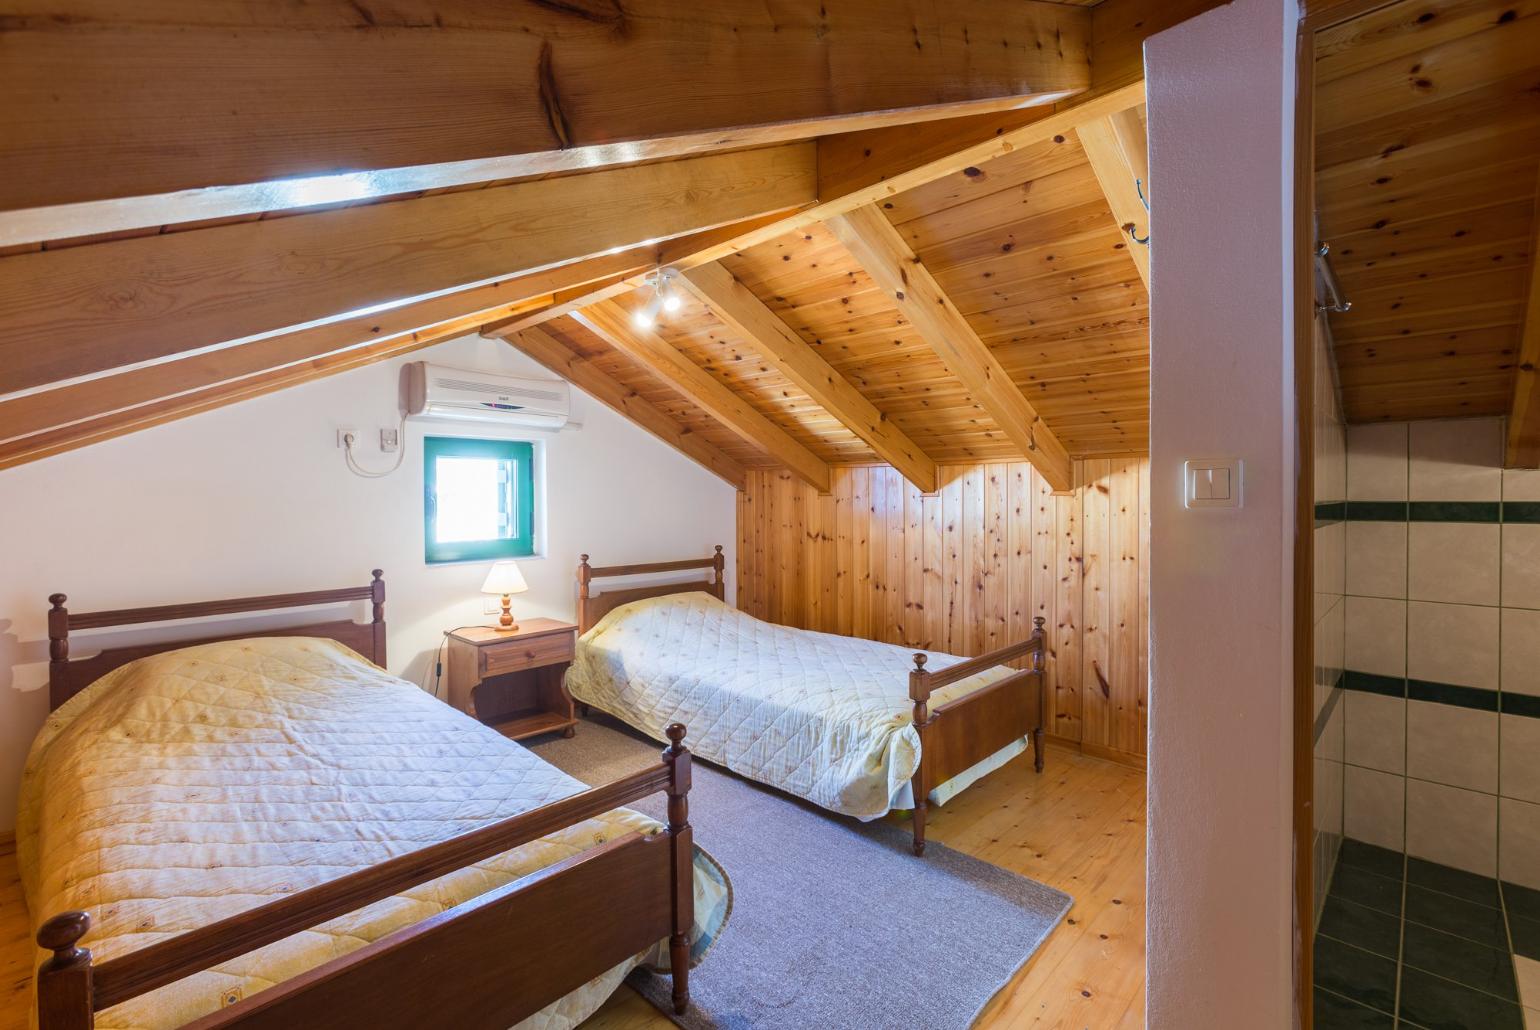 Twin bedroom in loft with en suite W/C